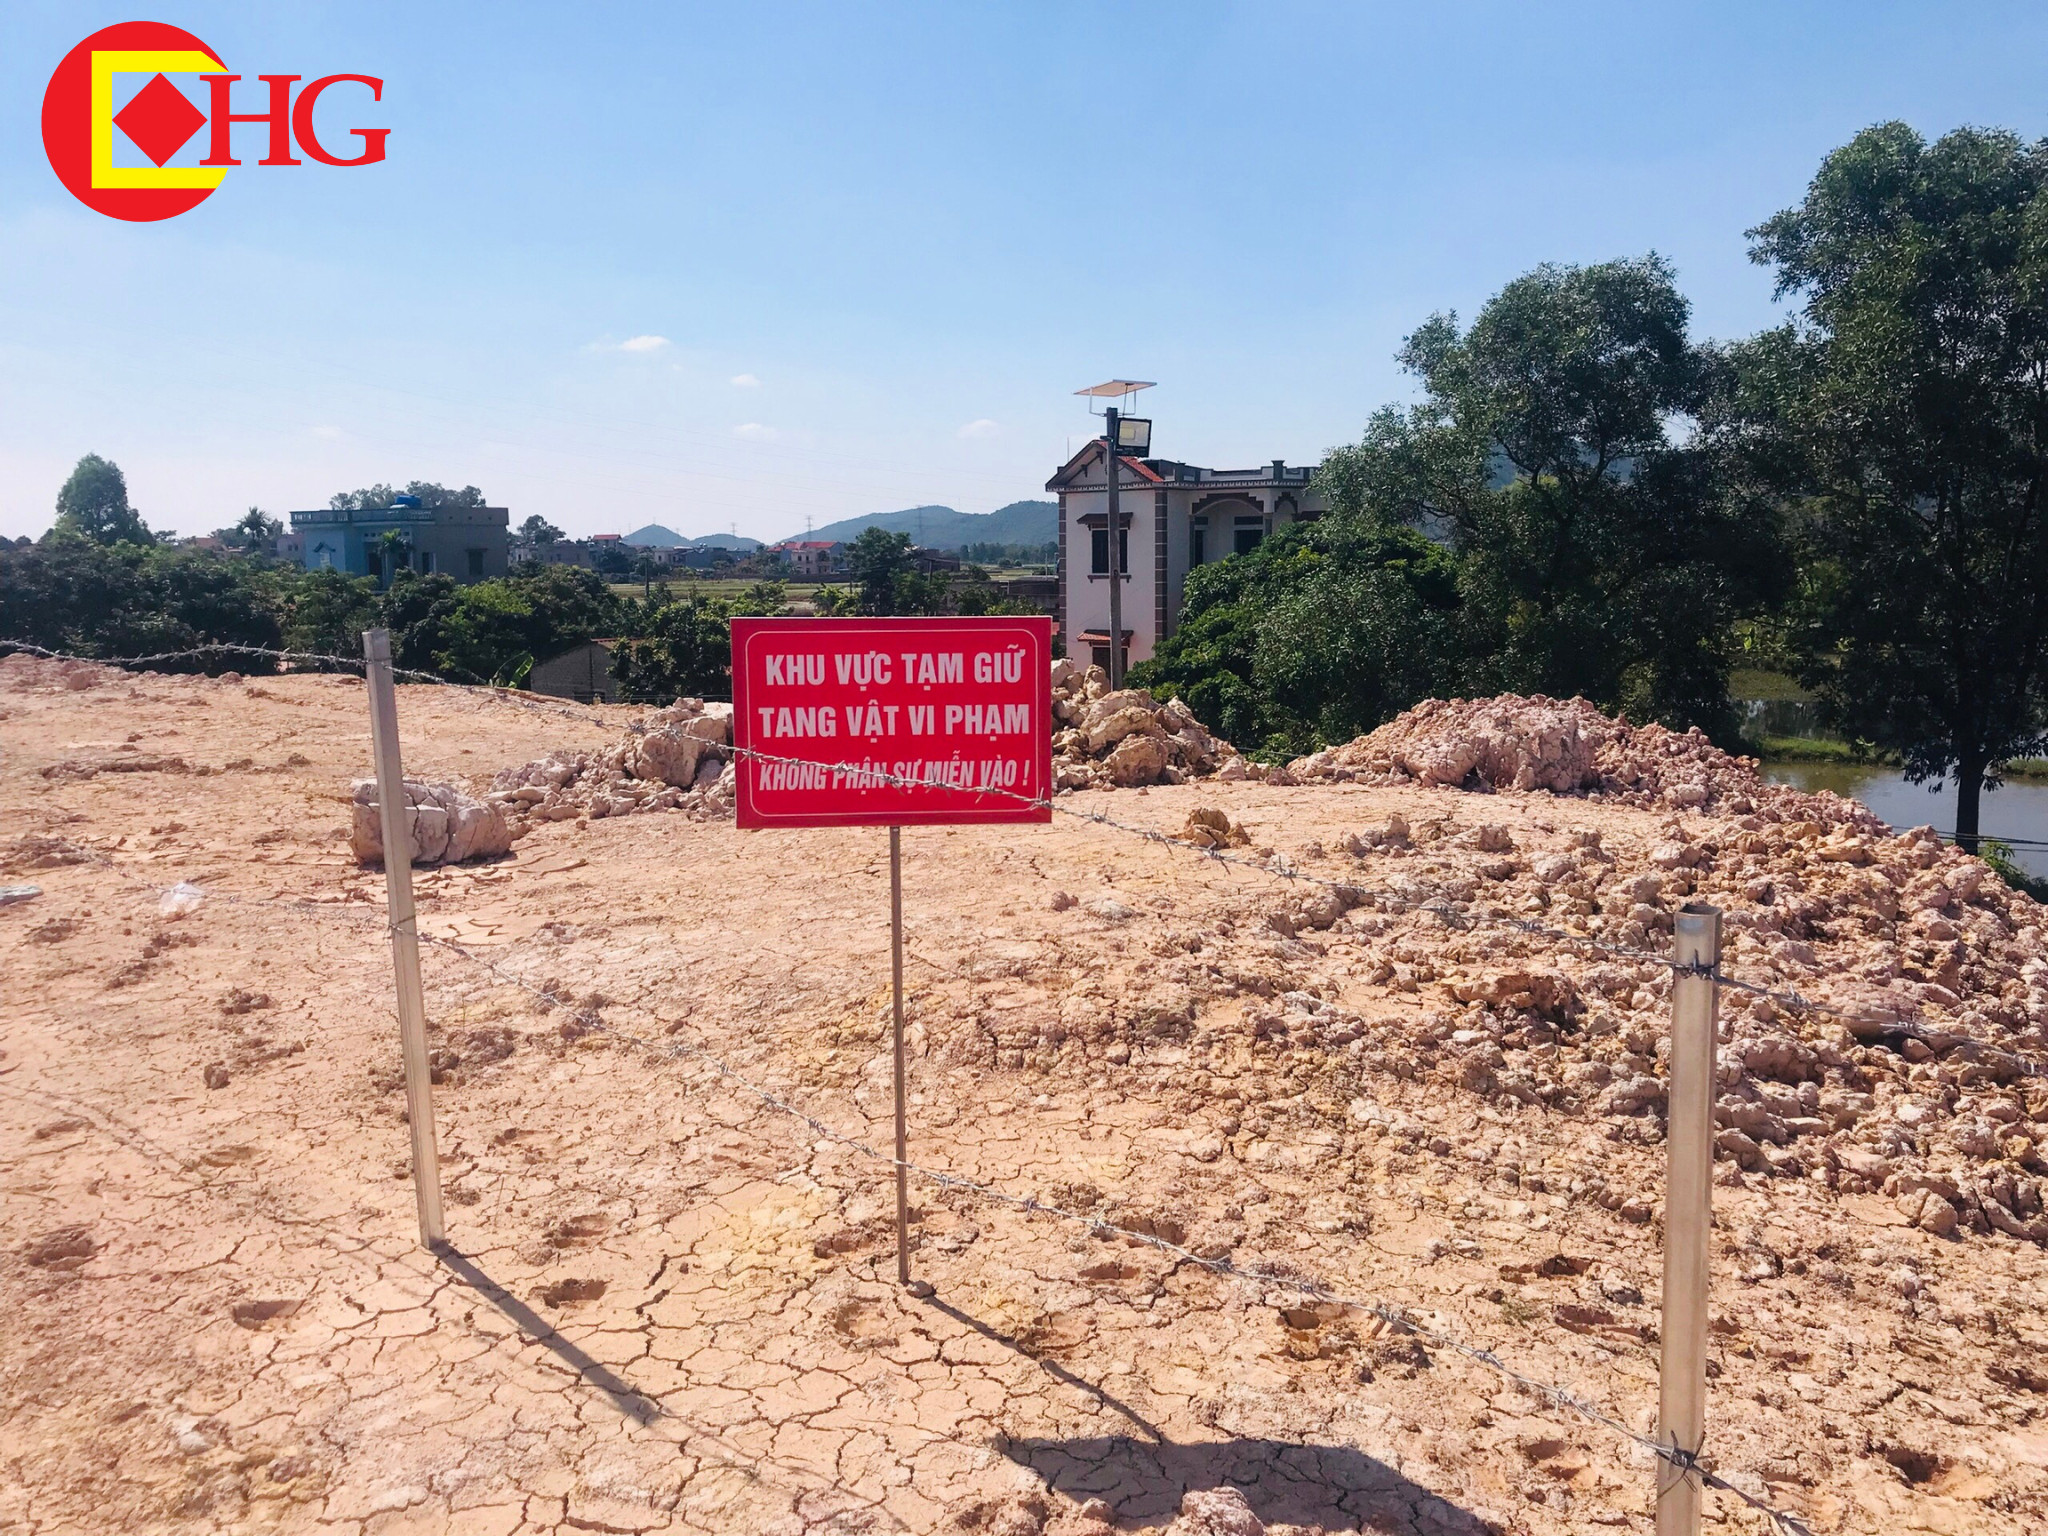 UBND huyện Yên Dũng chỉ đạo quyết liệt vụ khai thác tài nguyên khoáng sản trái phép